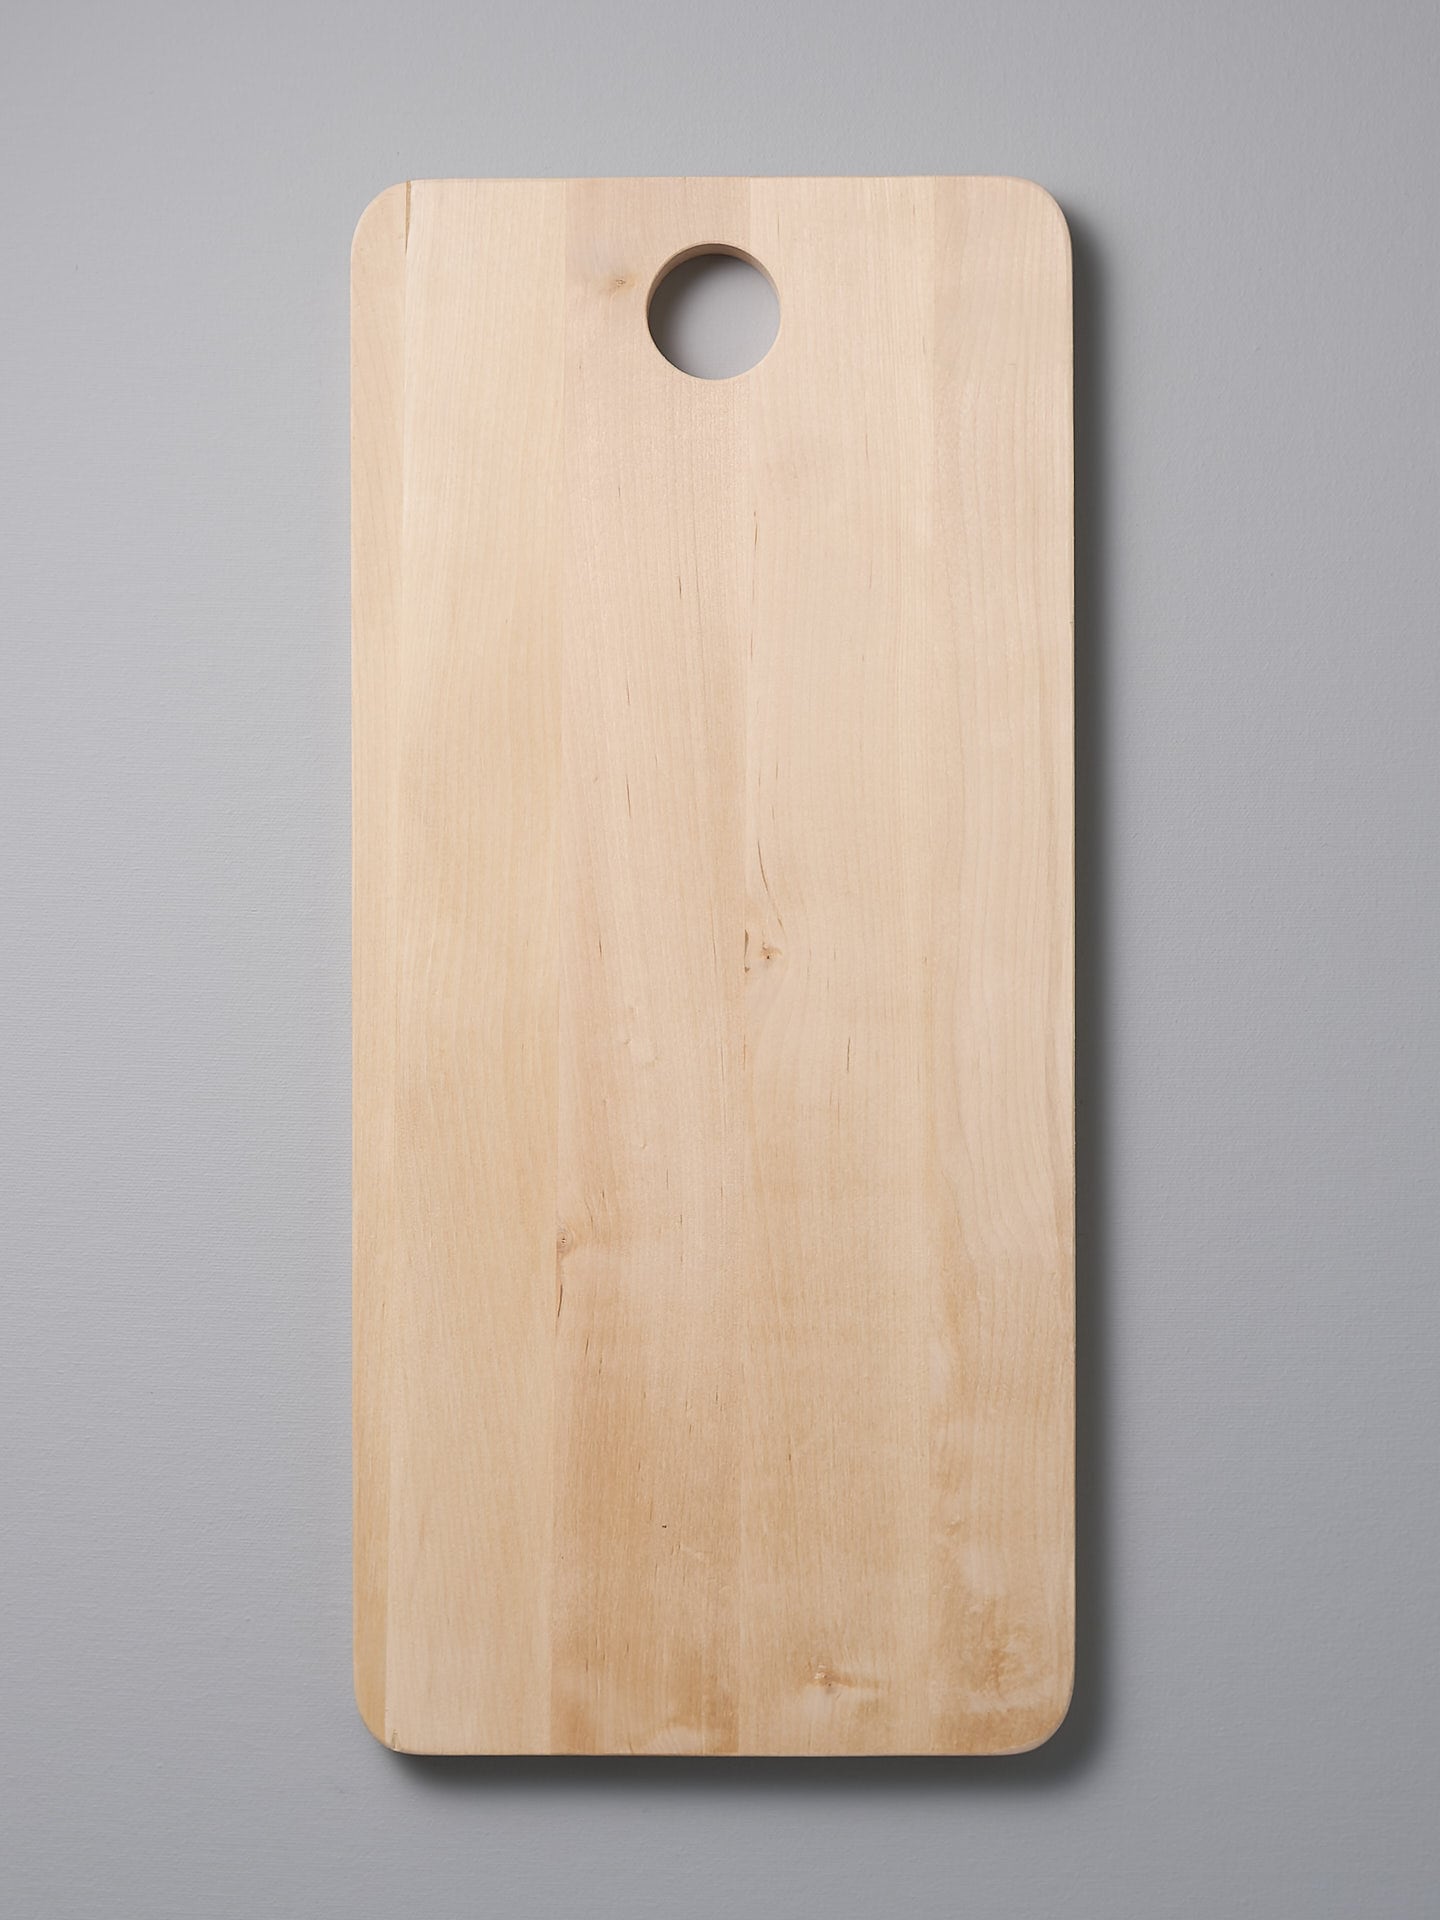 An Iris Hantverk Birch Chopping Board – Large on a gray background.